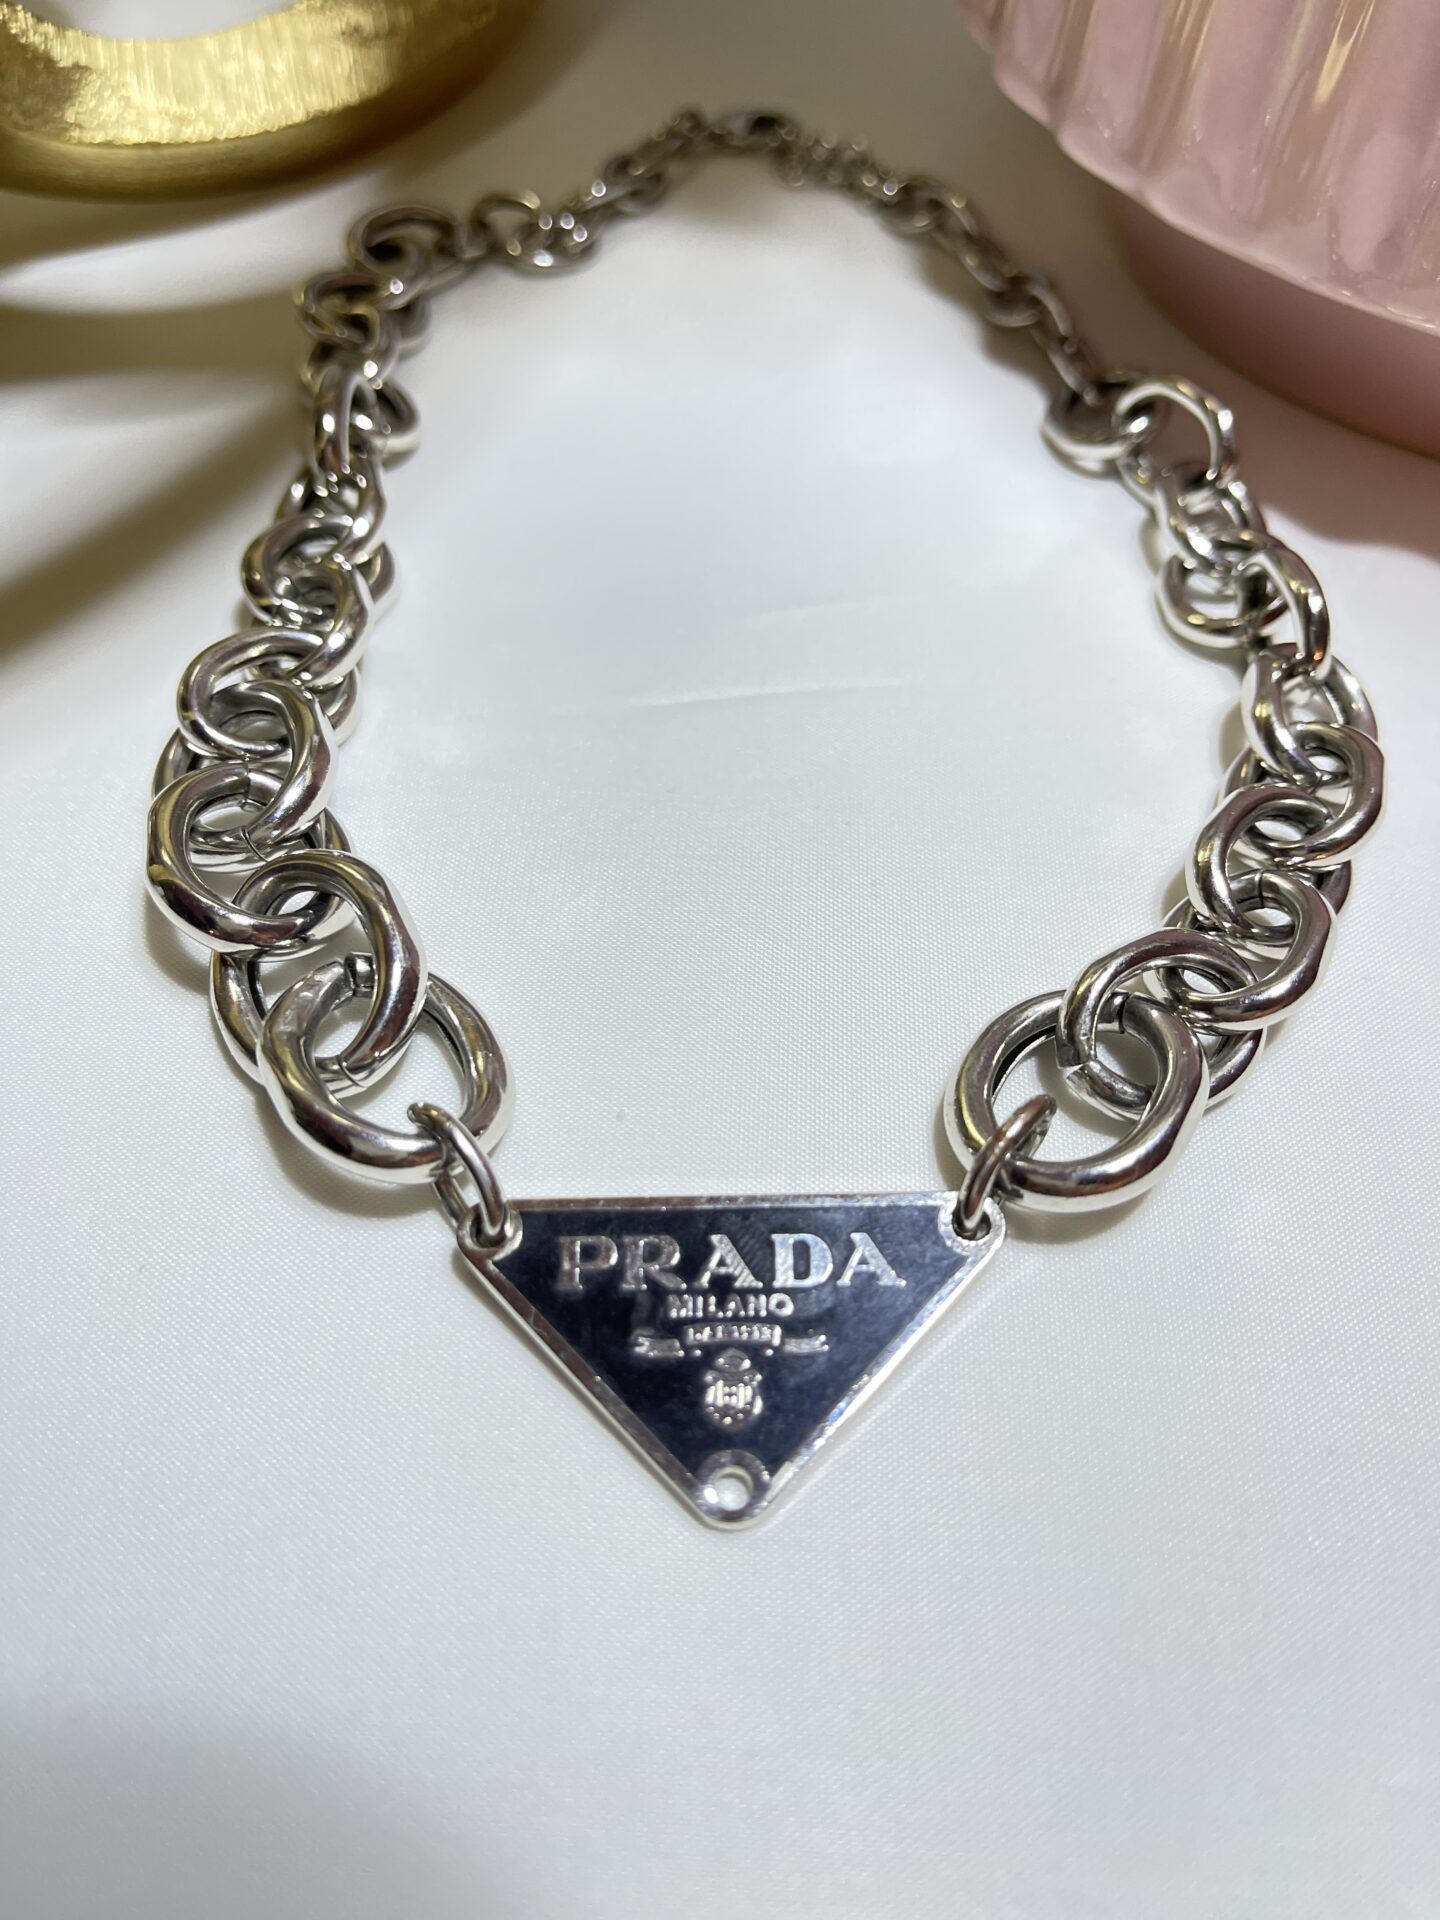 Prada Chain Necklace by Mindy Shear